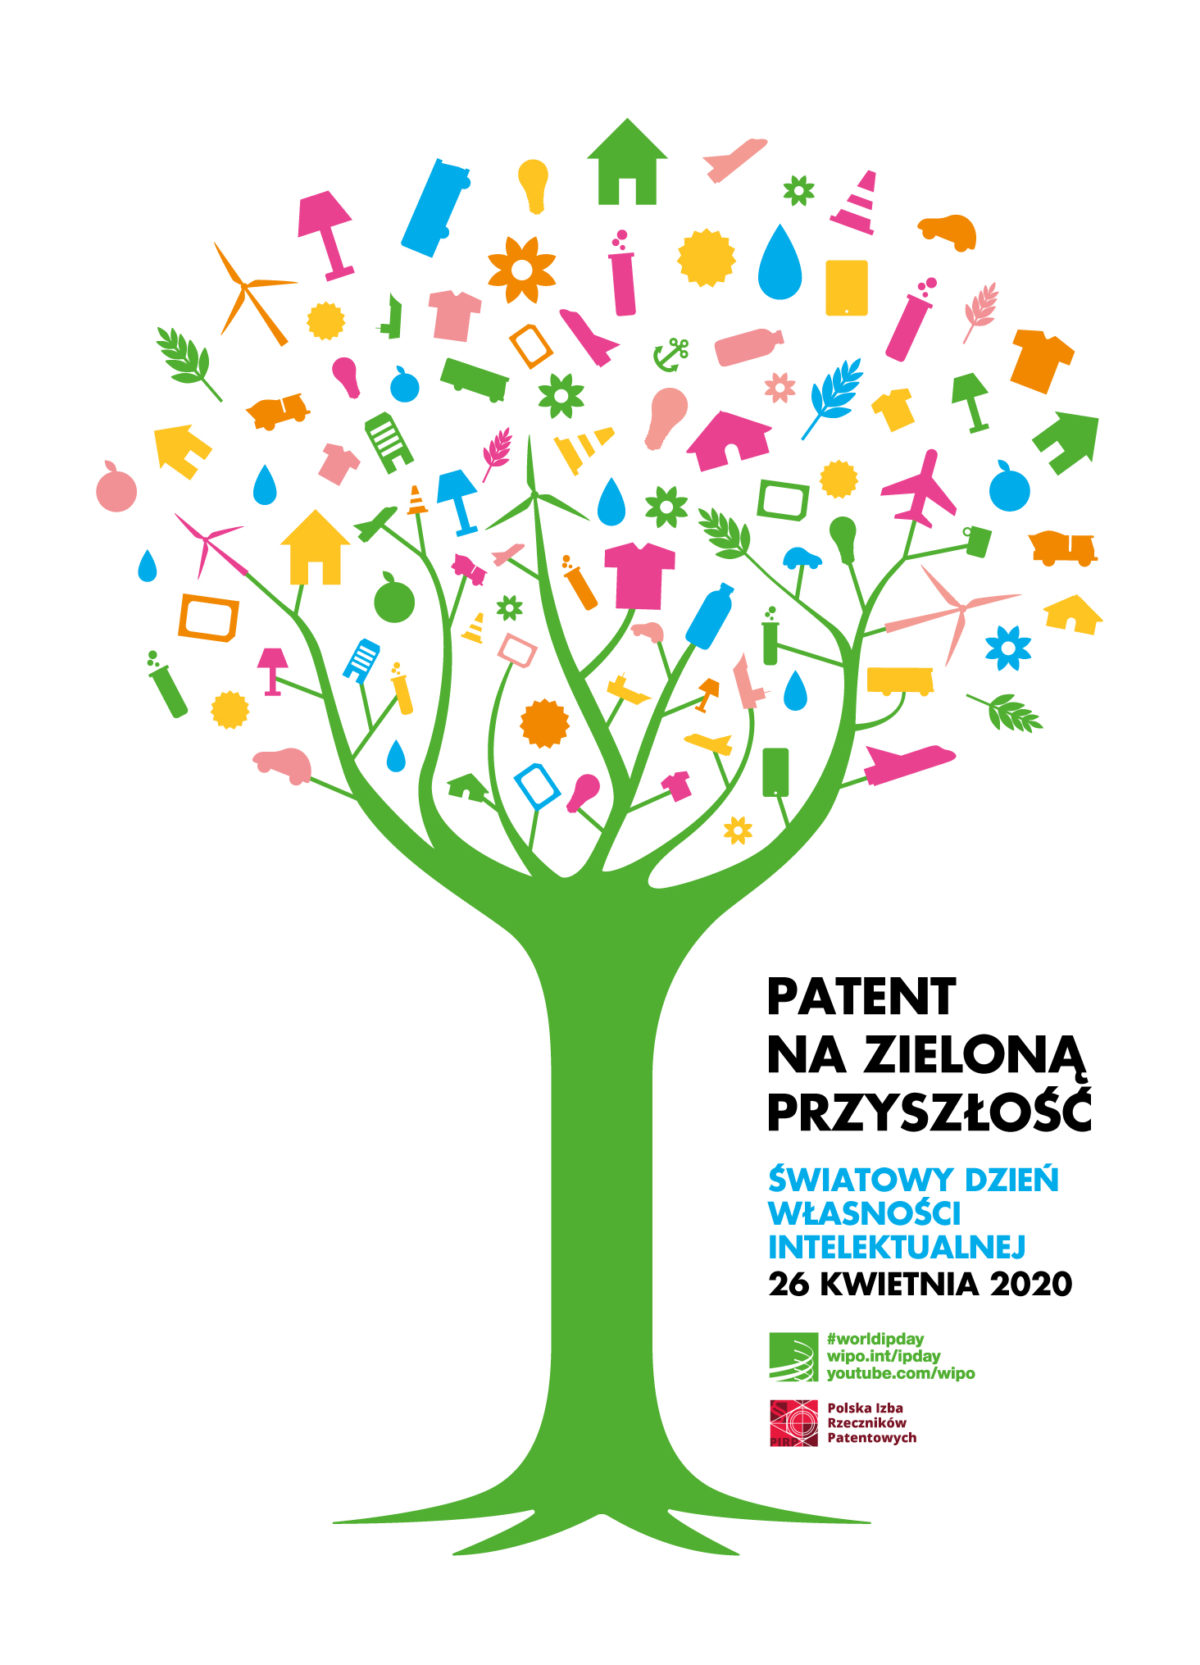 26 kwietnia  Światowy Dzień Własności Intelektualnej   &#8211;  Zapraszamy na bezpłatne konsultacje rzeczników patentowych.